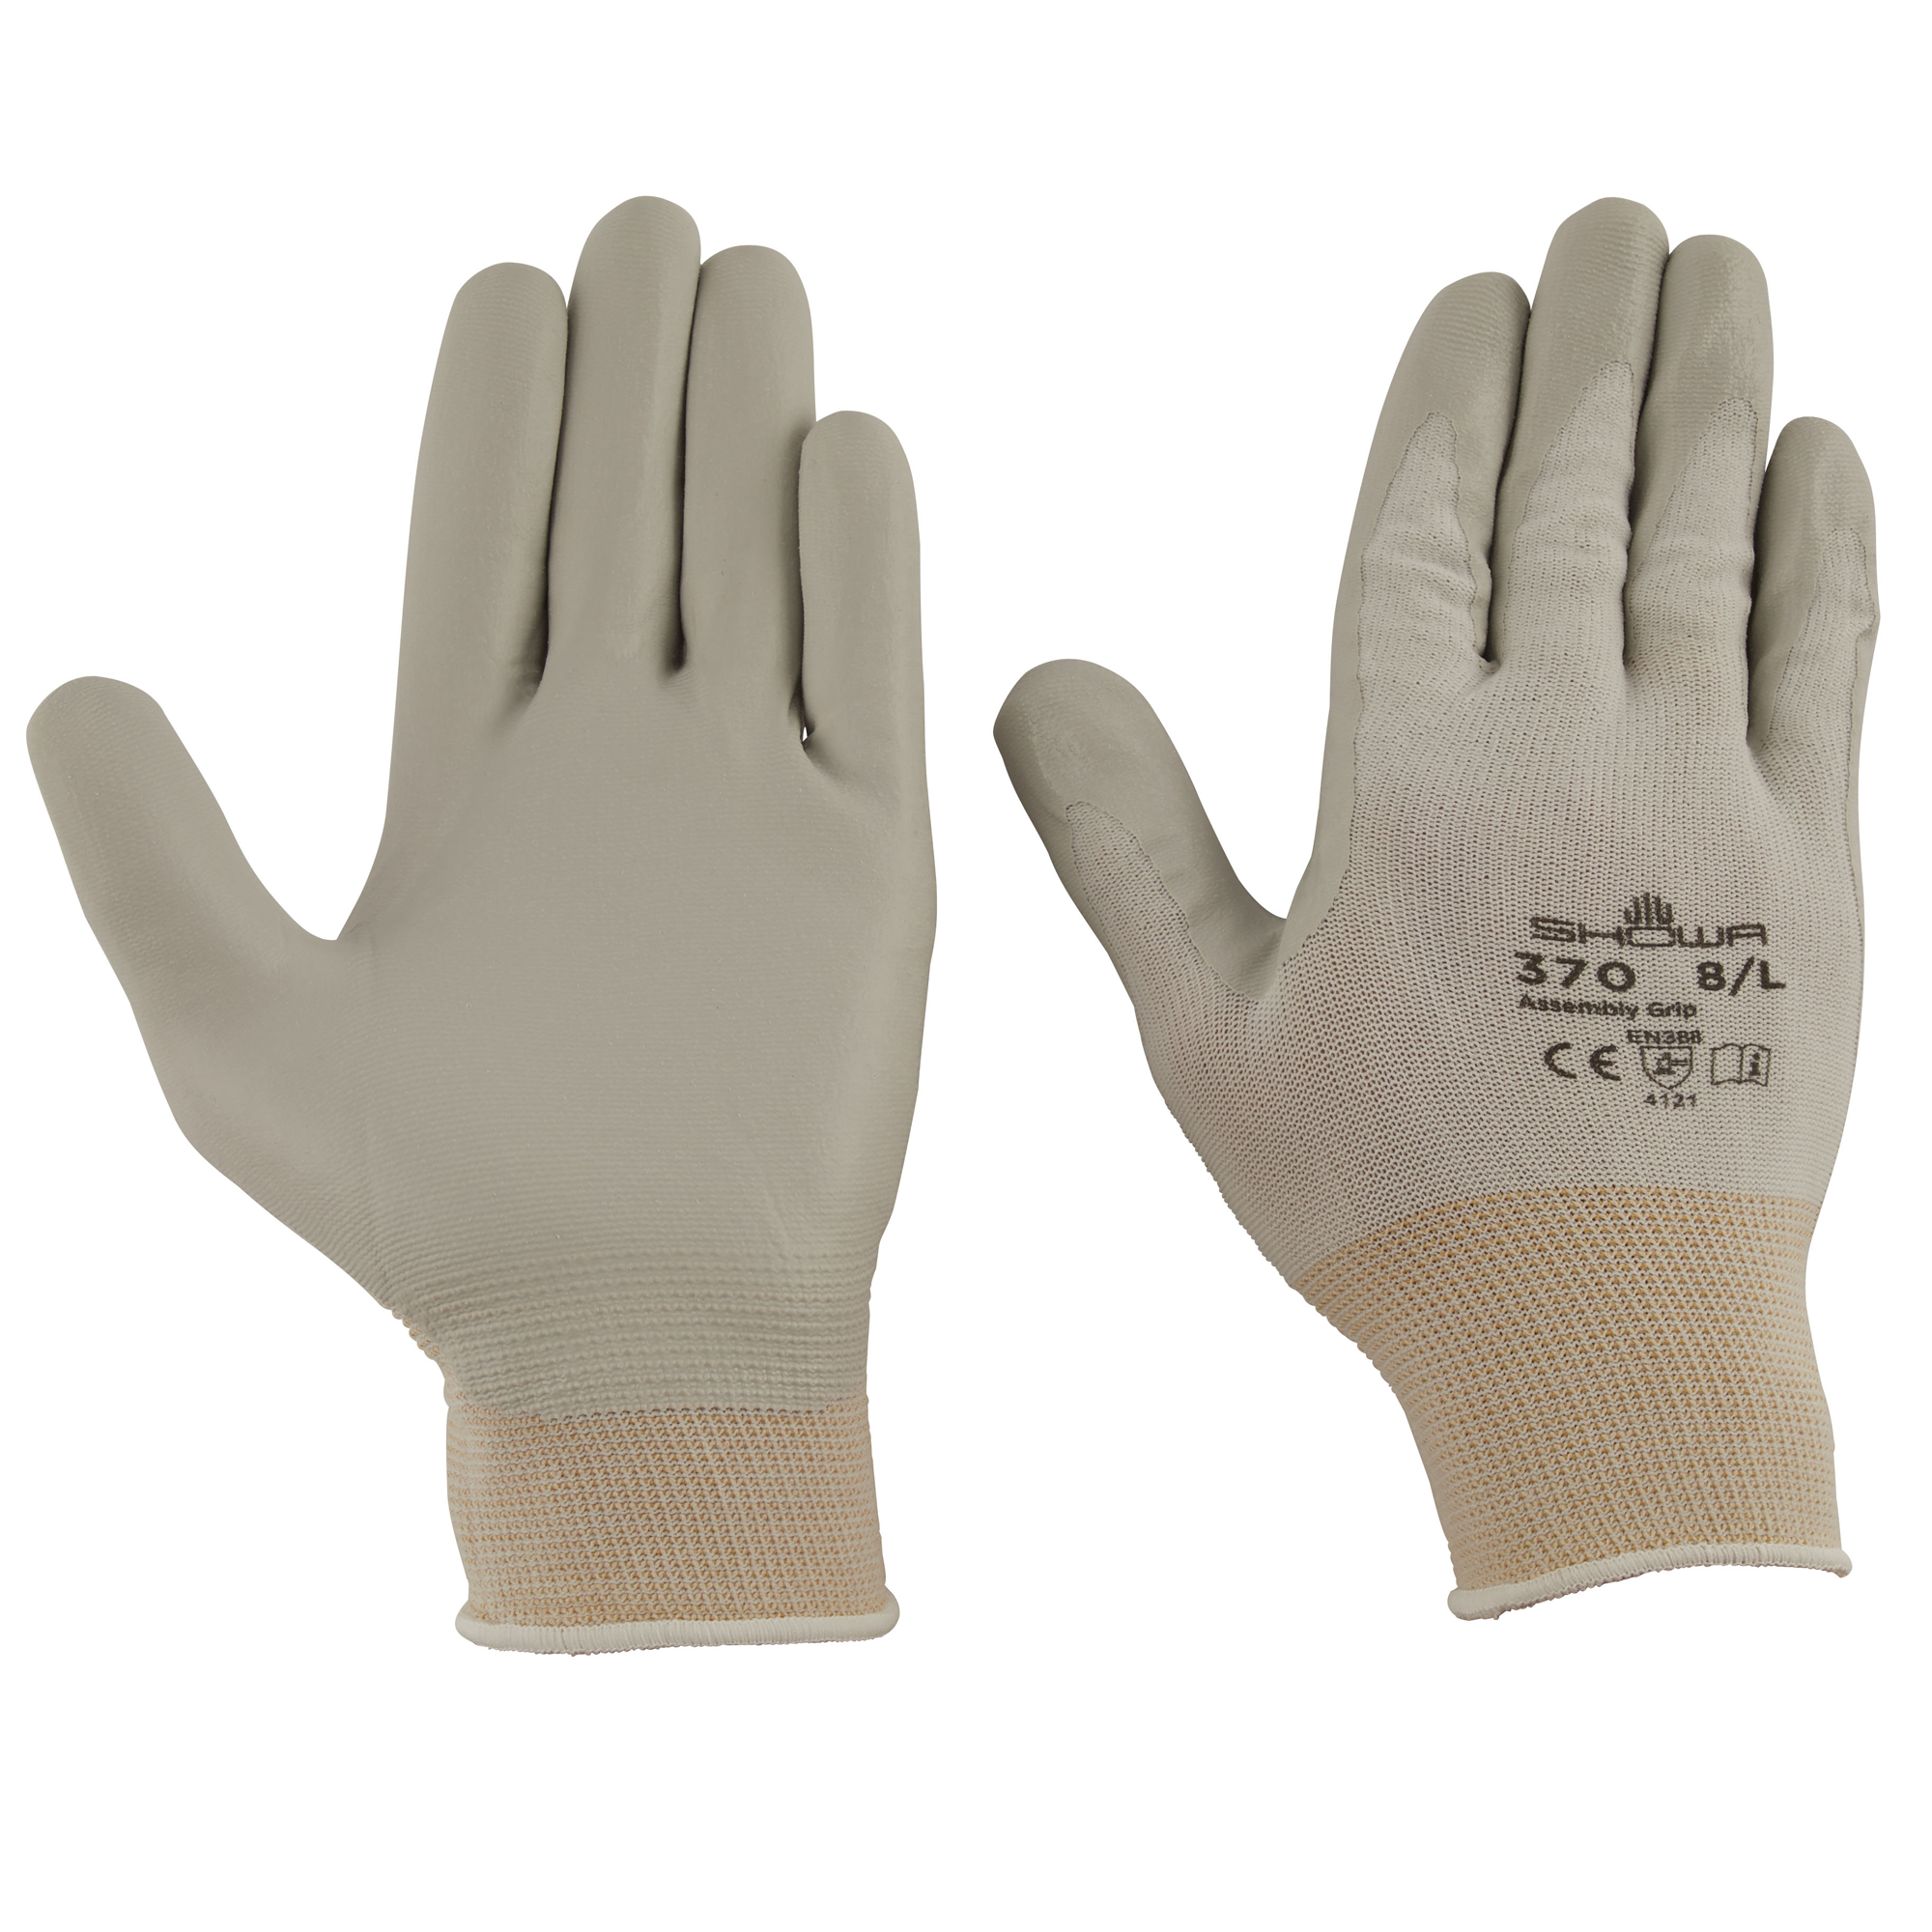 Feinmechaniker Handschuhe Größe 8/L + product picture